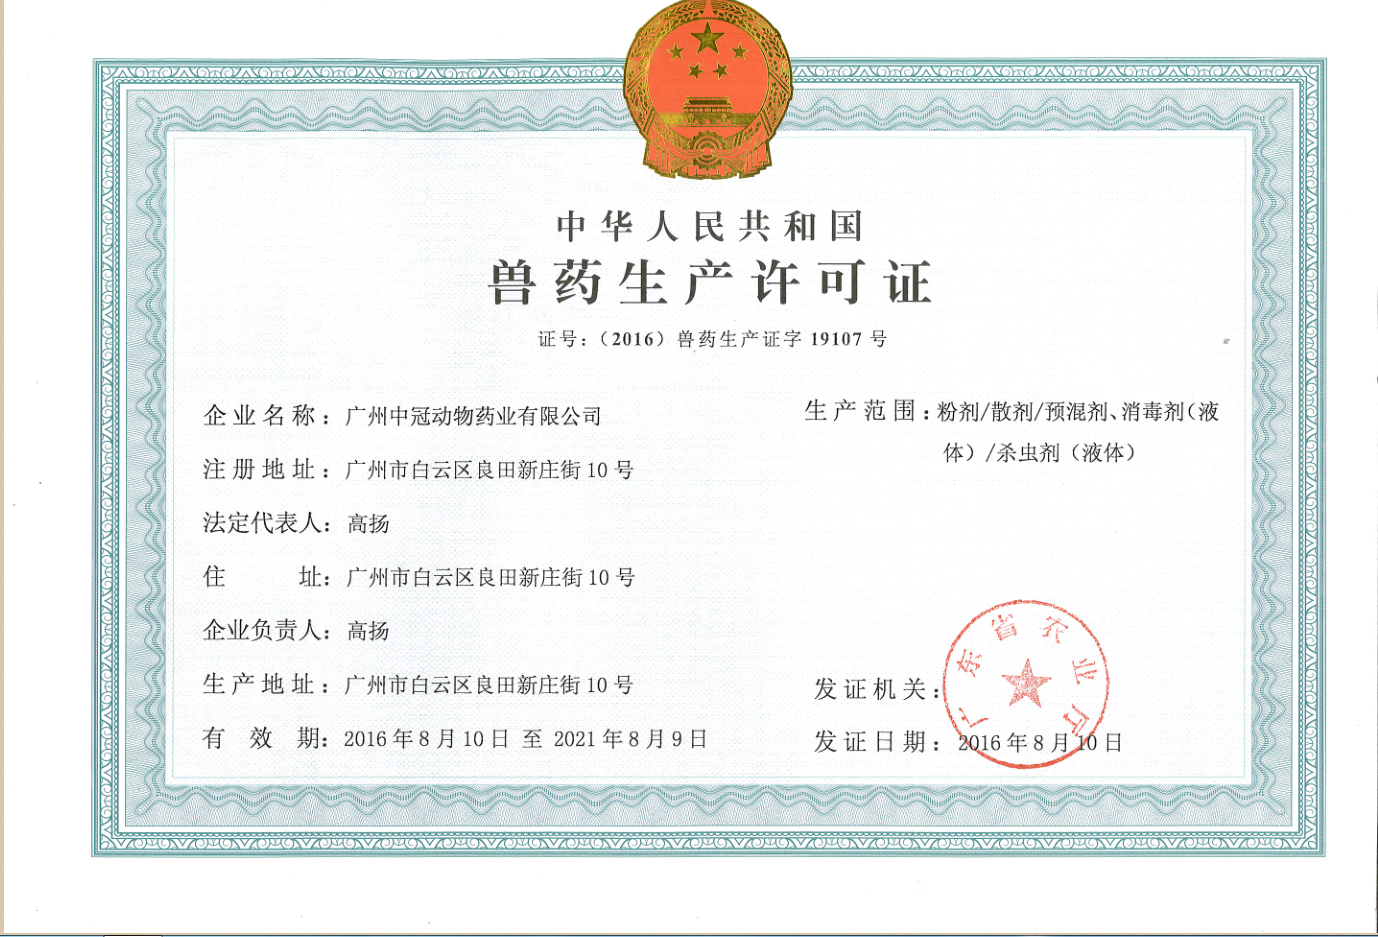 广州中冠公司关于包材更换新换发新《兽药生产许可证》、《兽药GMP证号》证号的通知